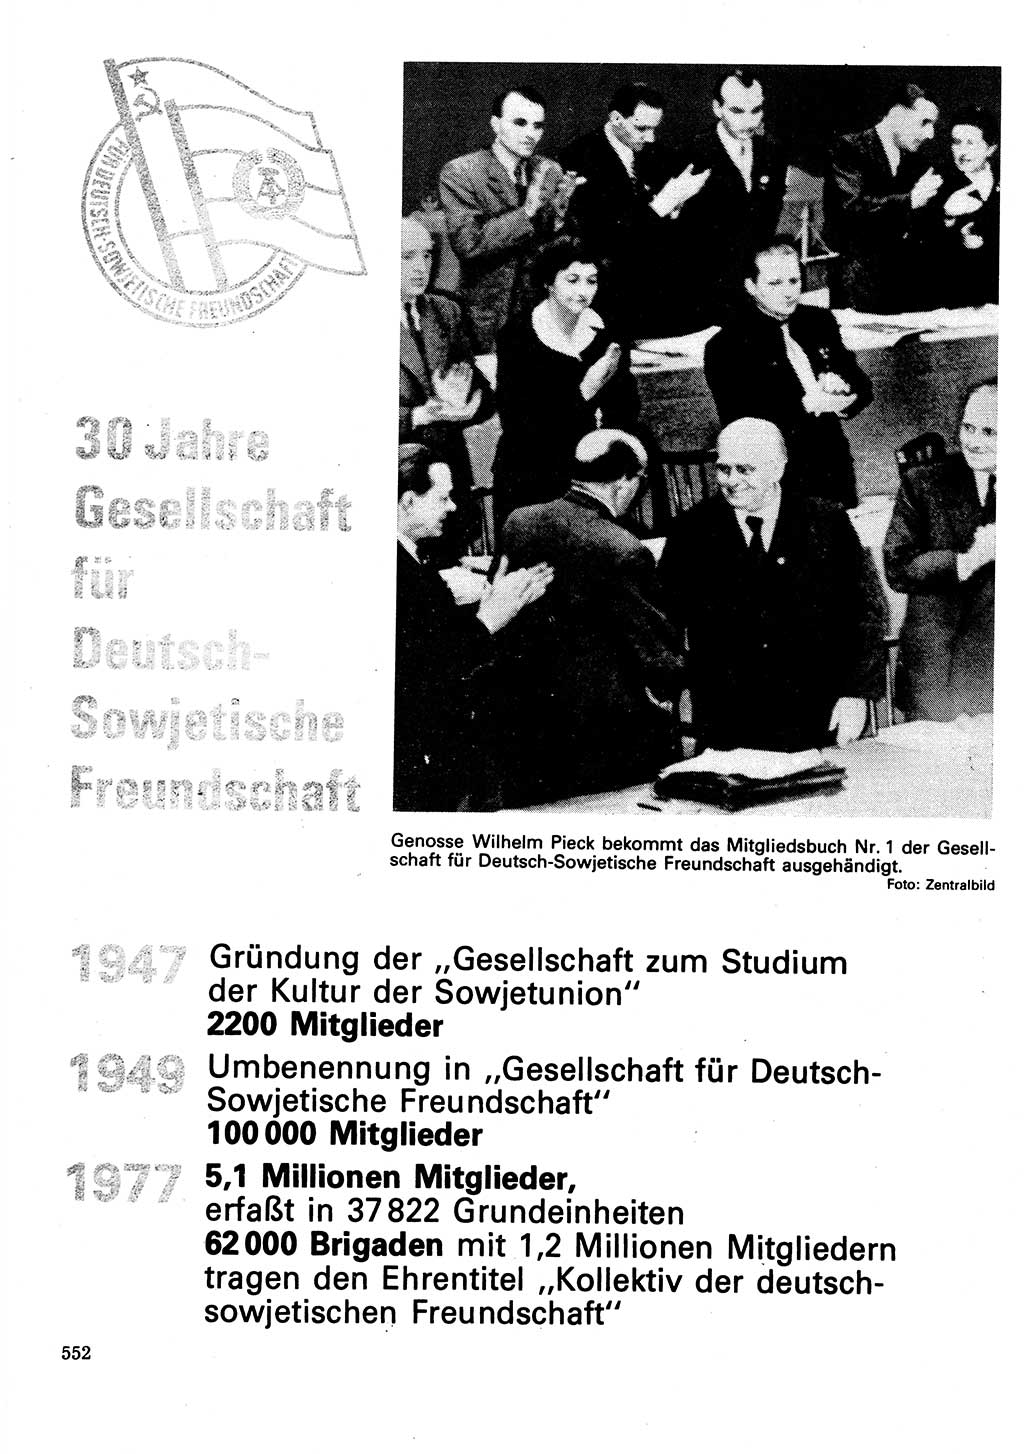 Neuer Weg (NW), Organ des Zentralkomitees (ZK) der SED (Sozialistische Einheitspartei Deutschlands) für Fragen des Parteilebens, 32. Jahrgang [Deutsche Demokratische Republik (DDR)] 1977, Seite 552 (NW ZK SED DDR 1977, S. 552)